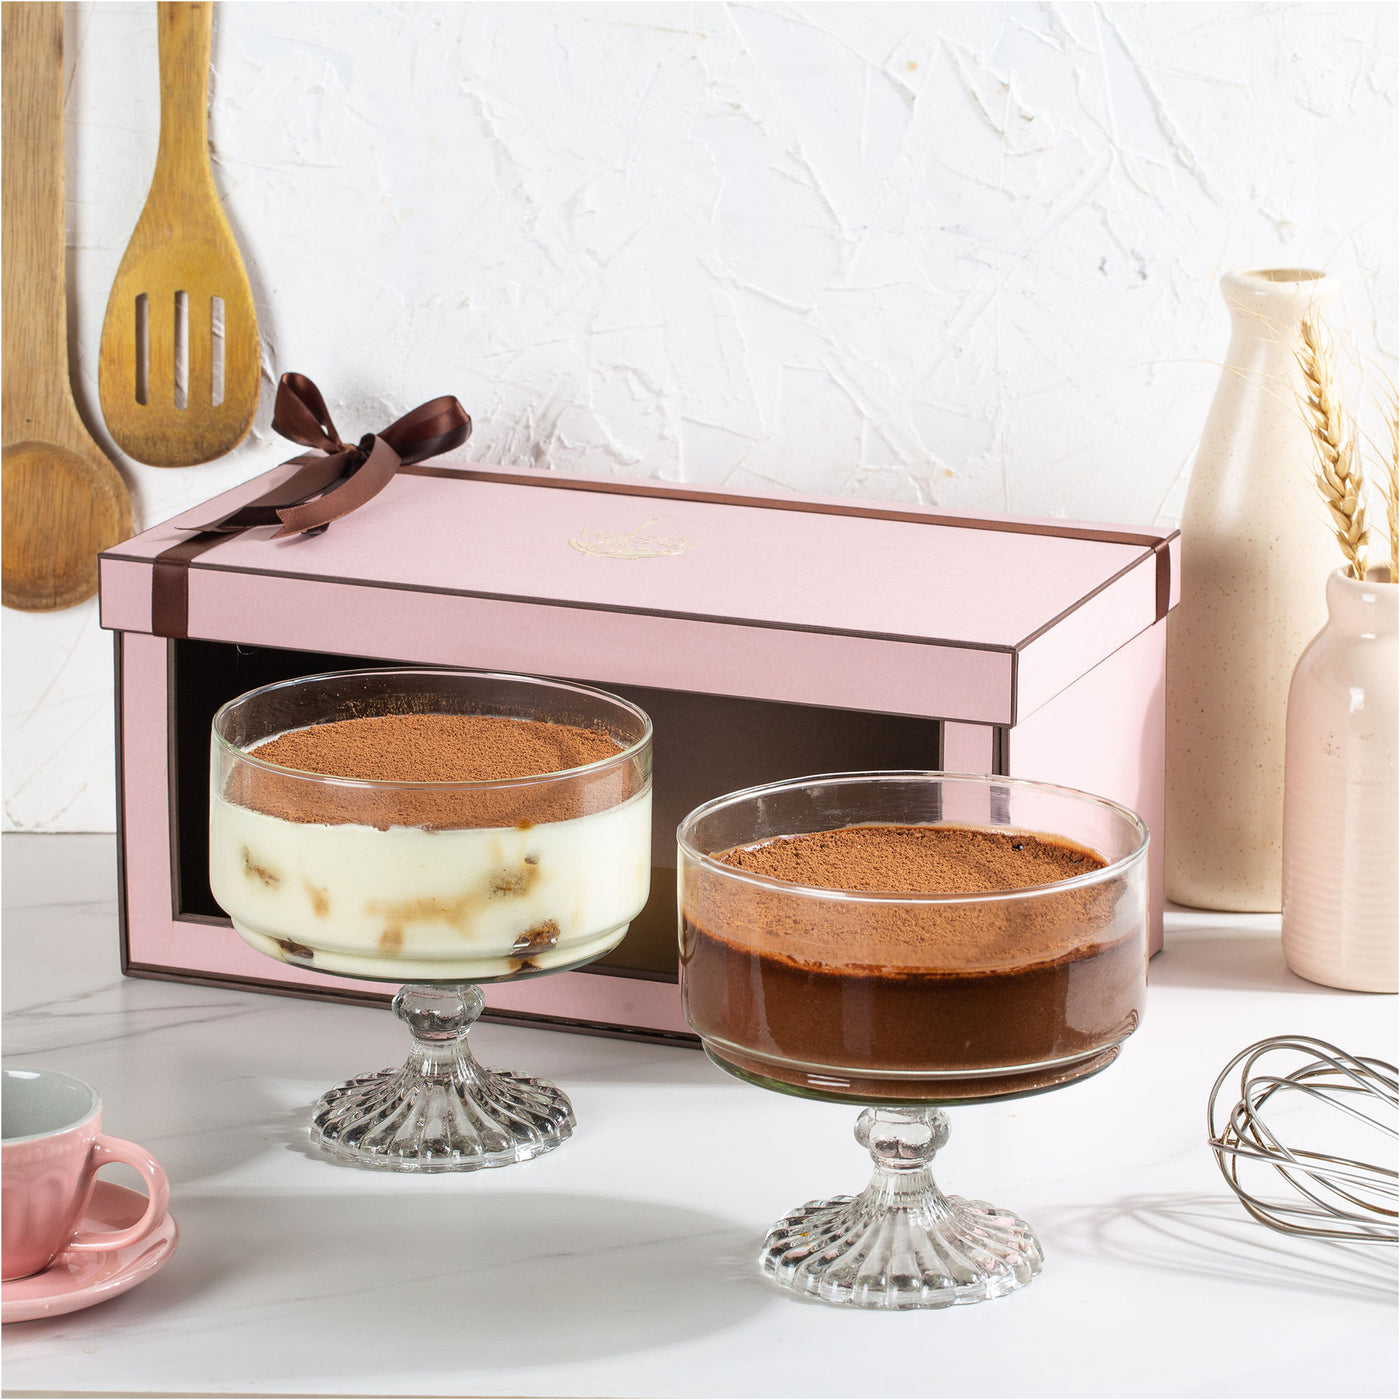 Dark Chocolate Mousse & Classic Tiramisu Twin Gift Box